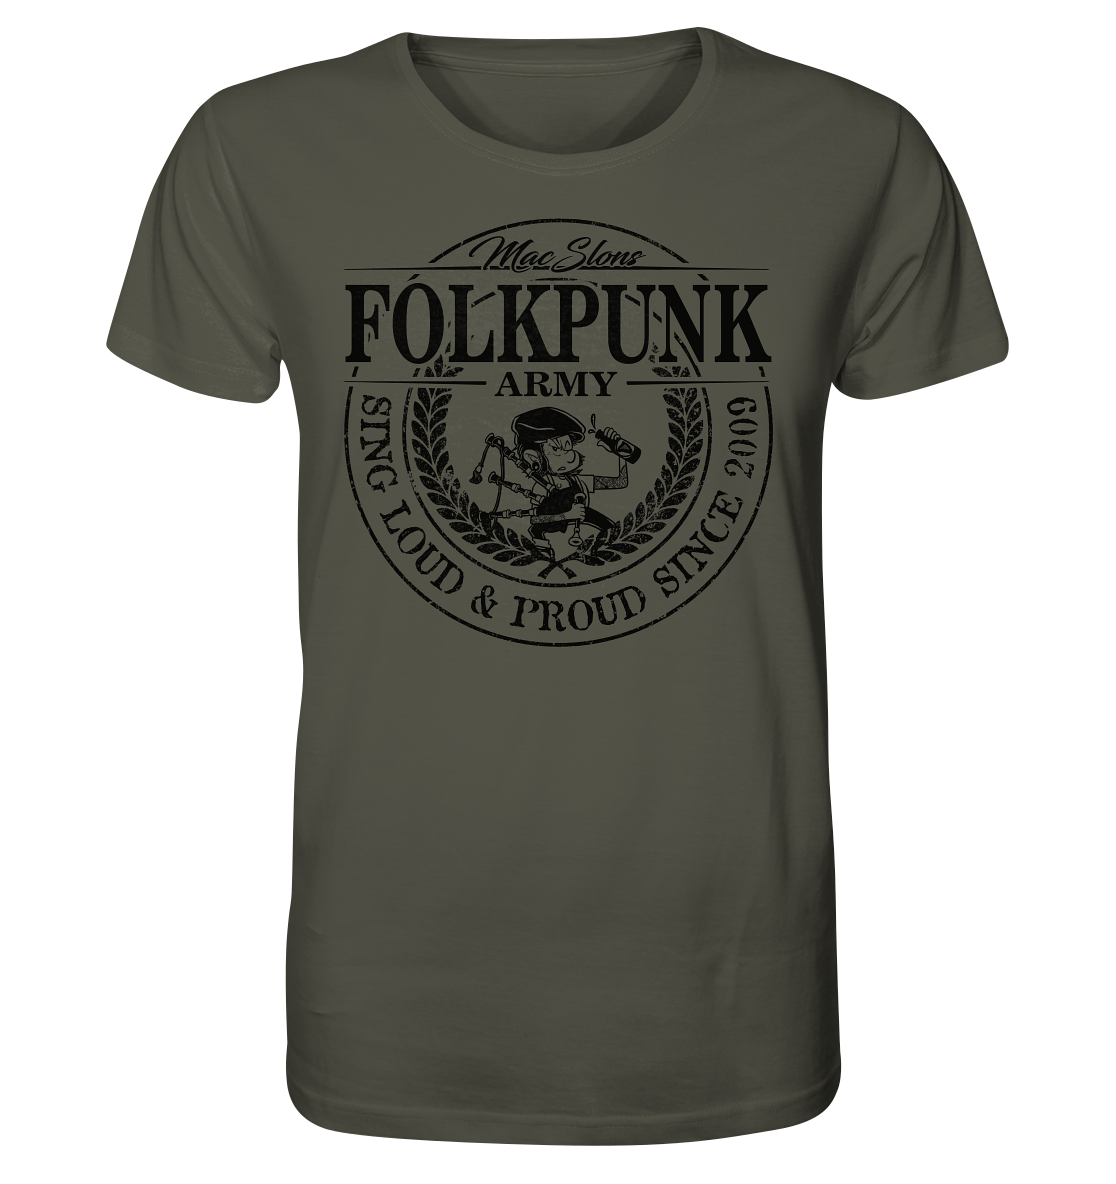 MacSlon's "Folkpunk Army" - Organic Shirt